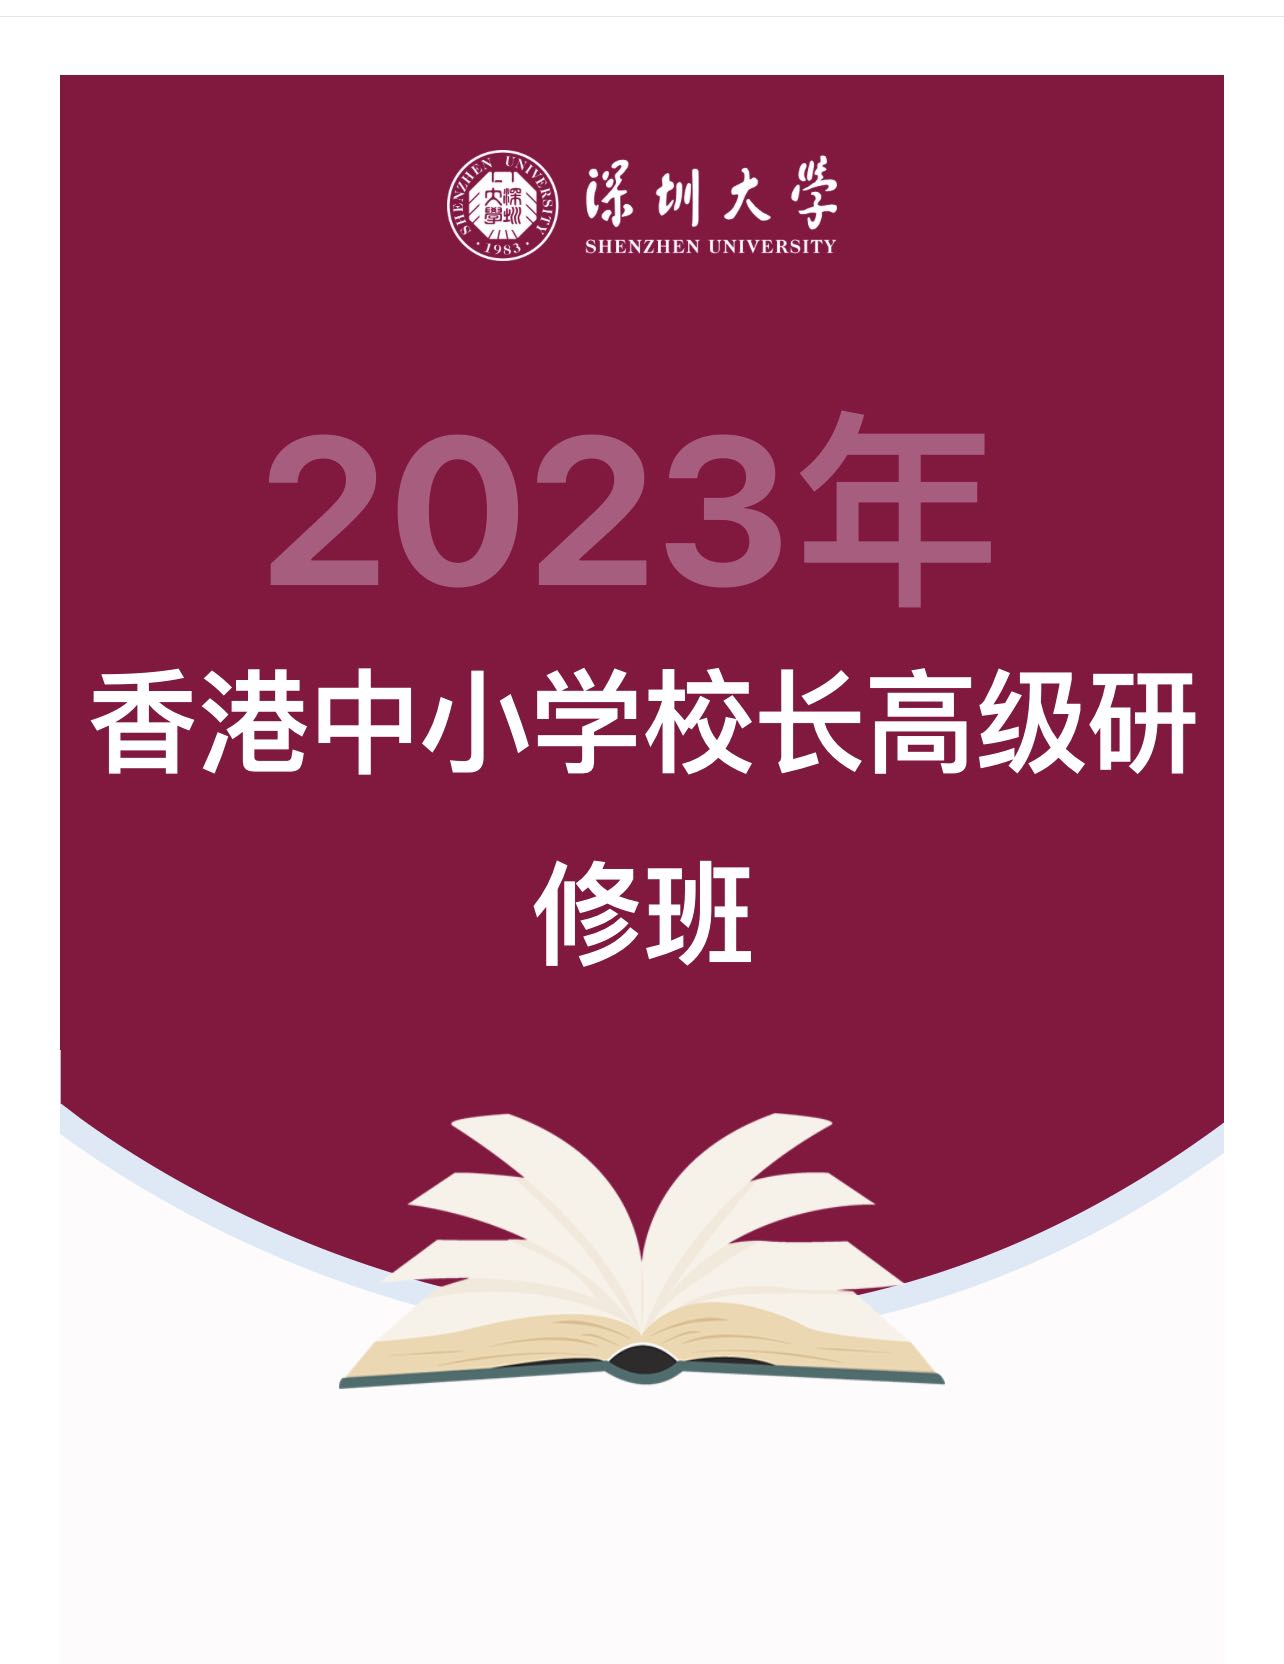 本會協辦2023年香港中小學校長高級研修班